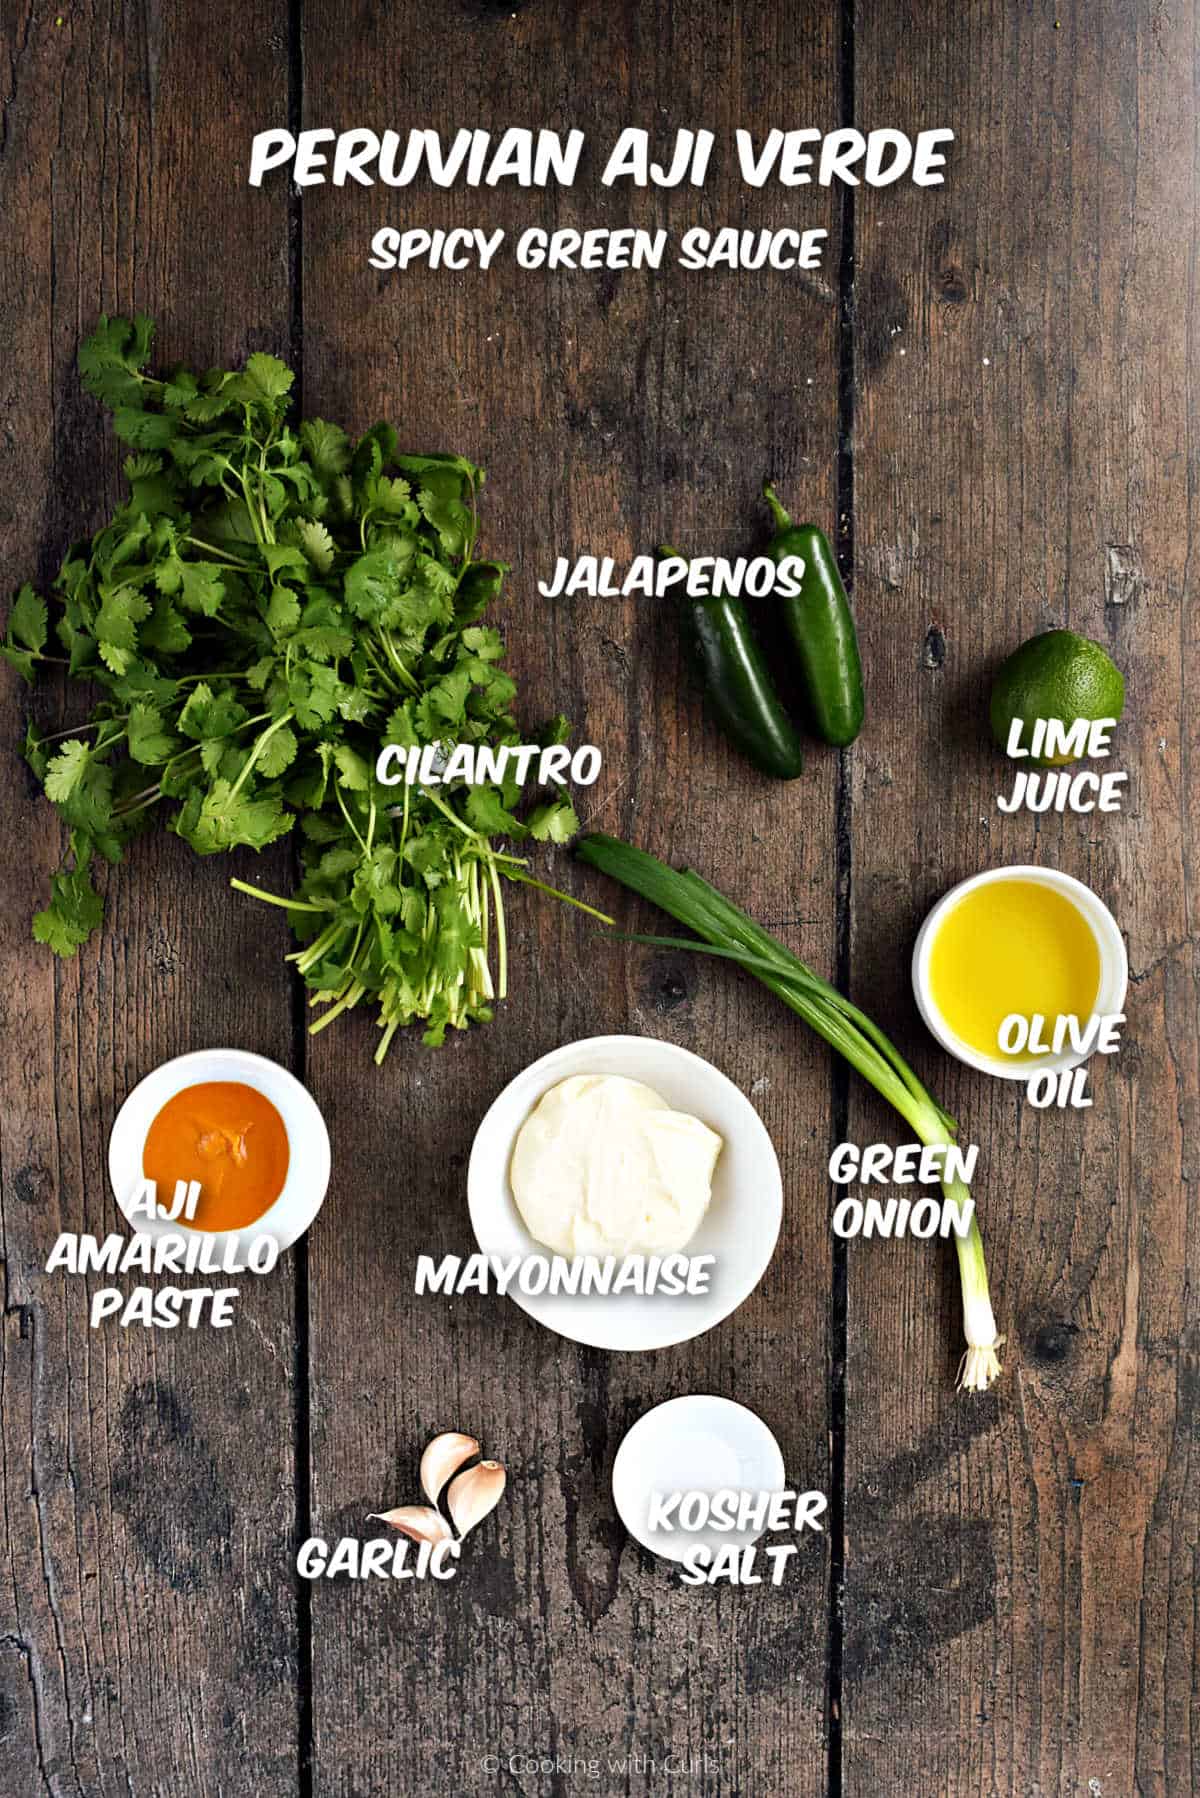 Aji Verde Sauce ingredients.